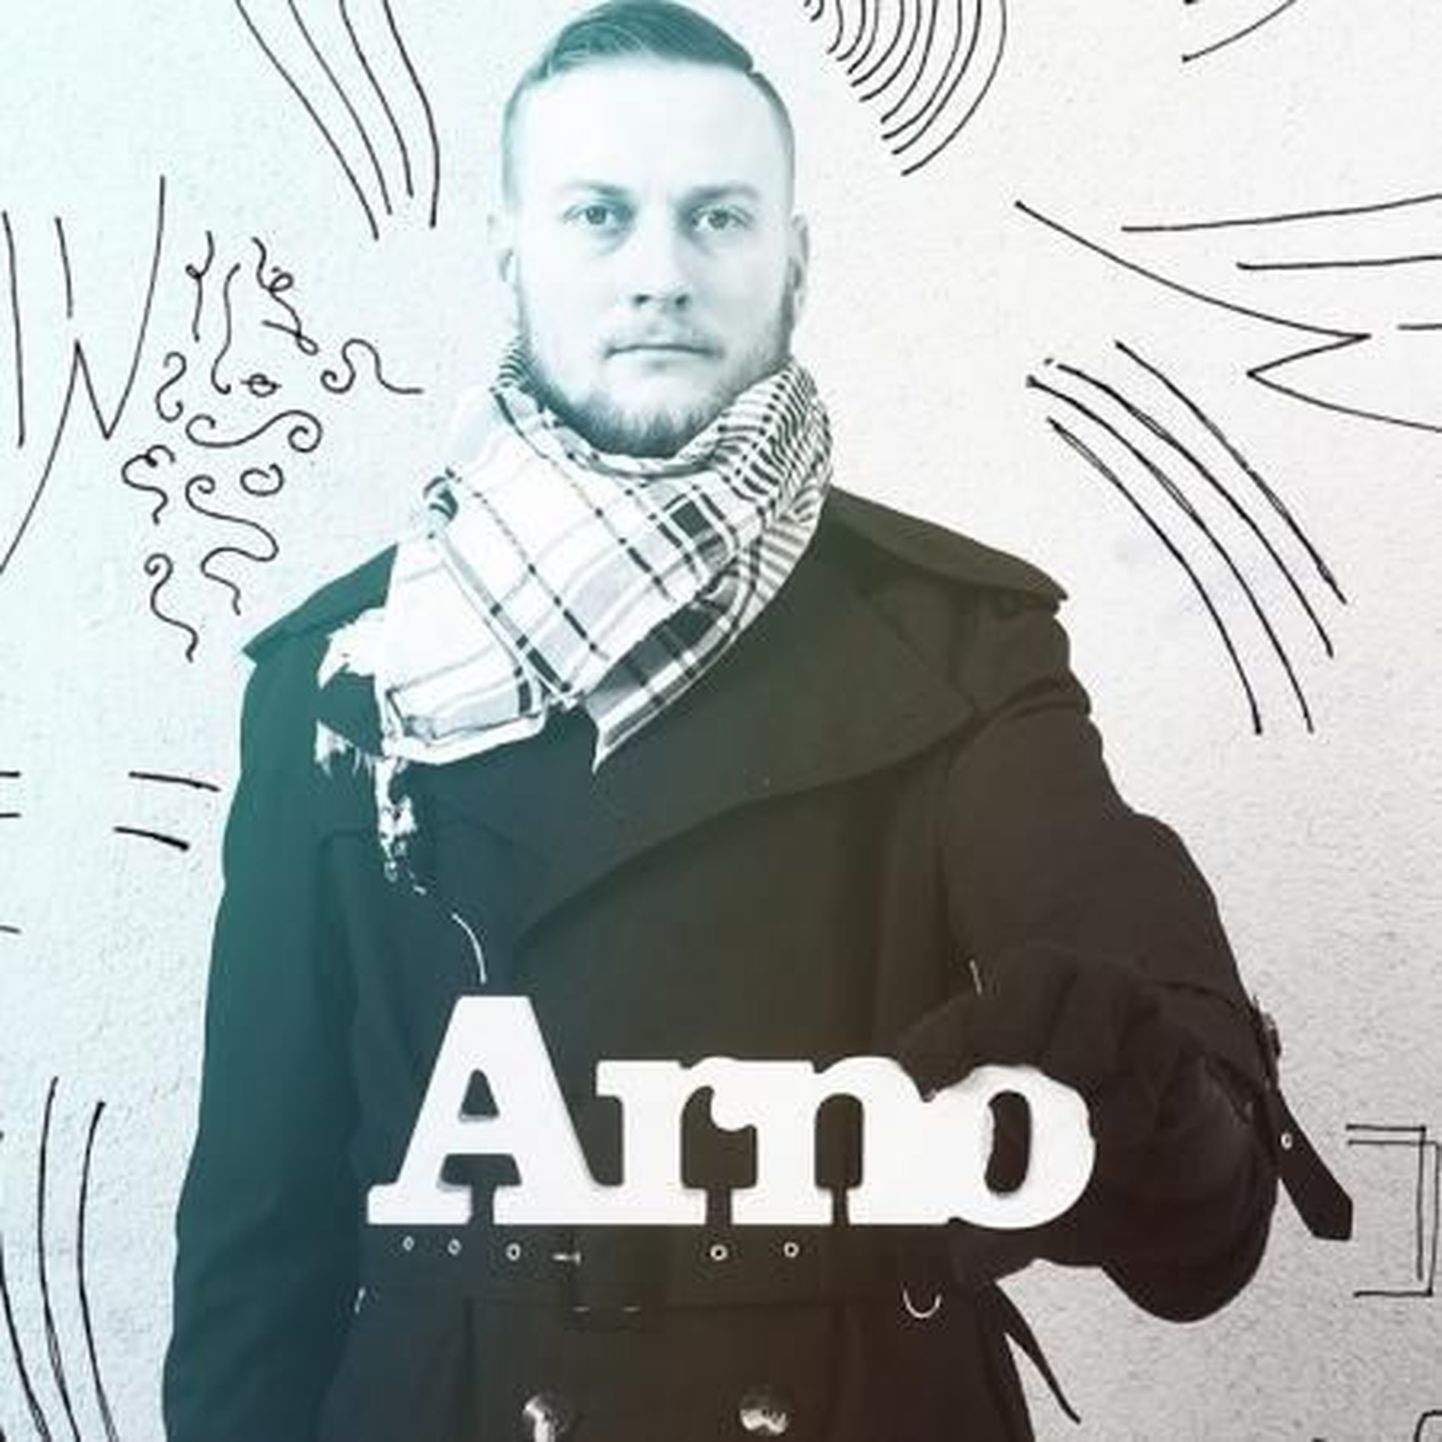 Seto kodukontserdi annab 30. jaanuaril 2015 artist nimega Arno